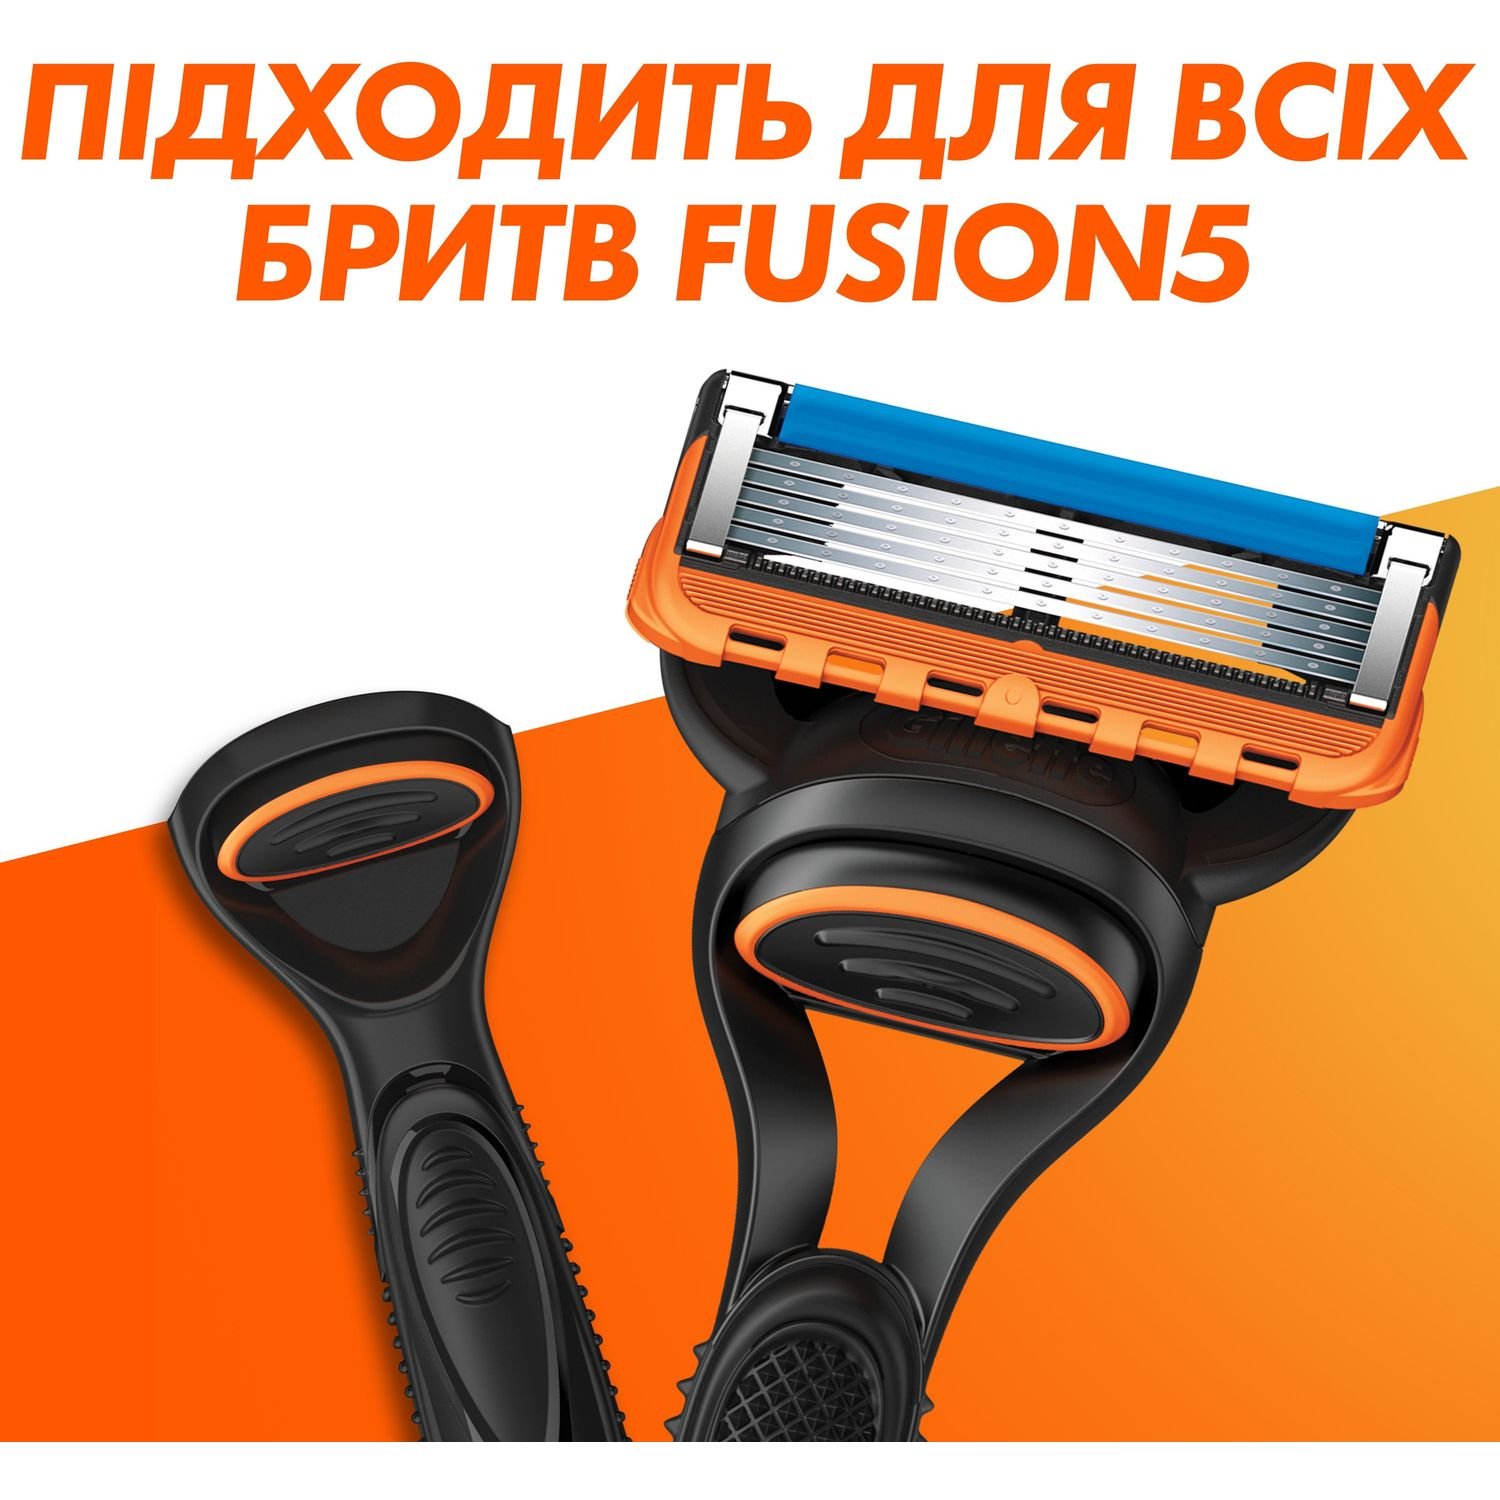 Сменные картриджи для бритья мужские Gillette Fusion5 4 шт. - фото 4